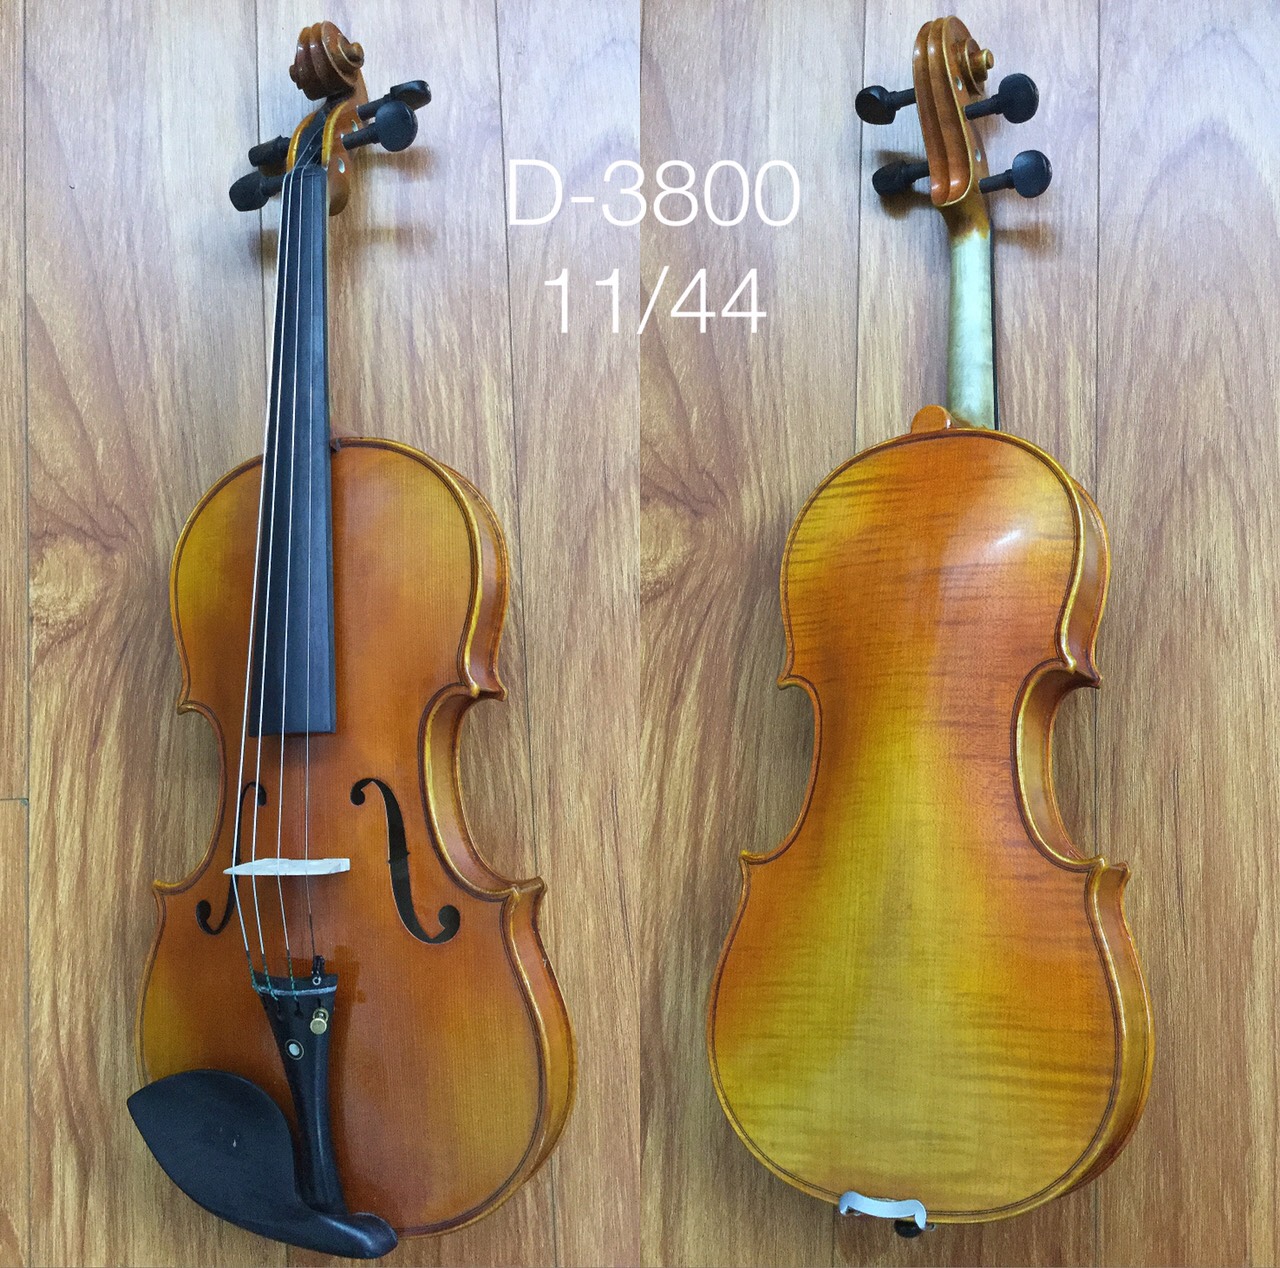 Violin D3800